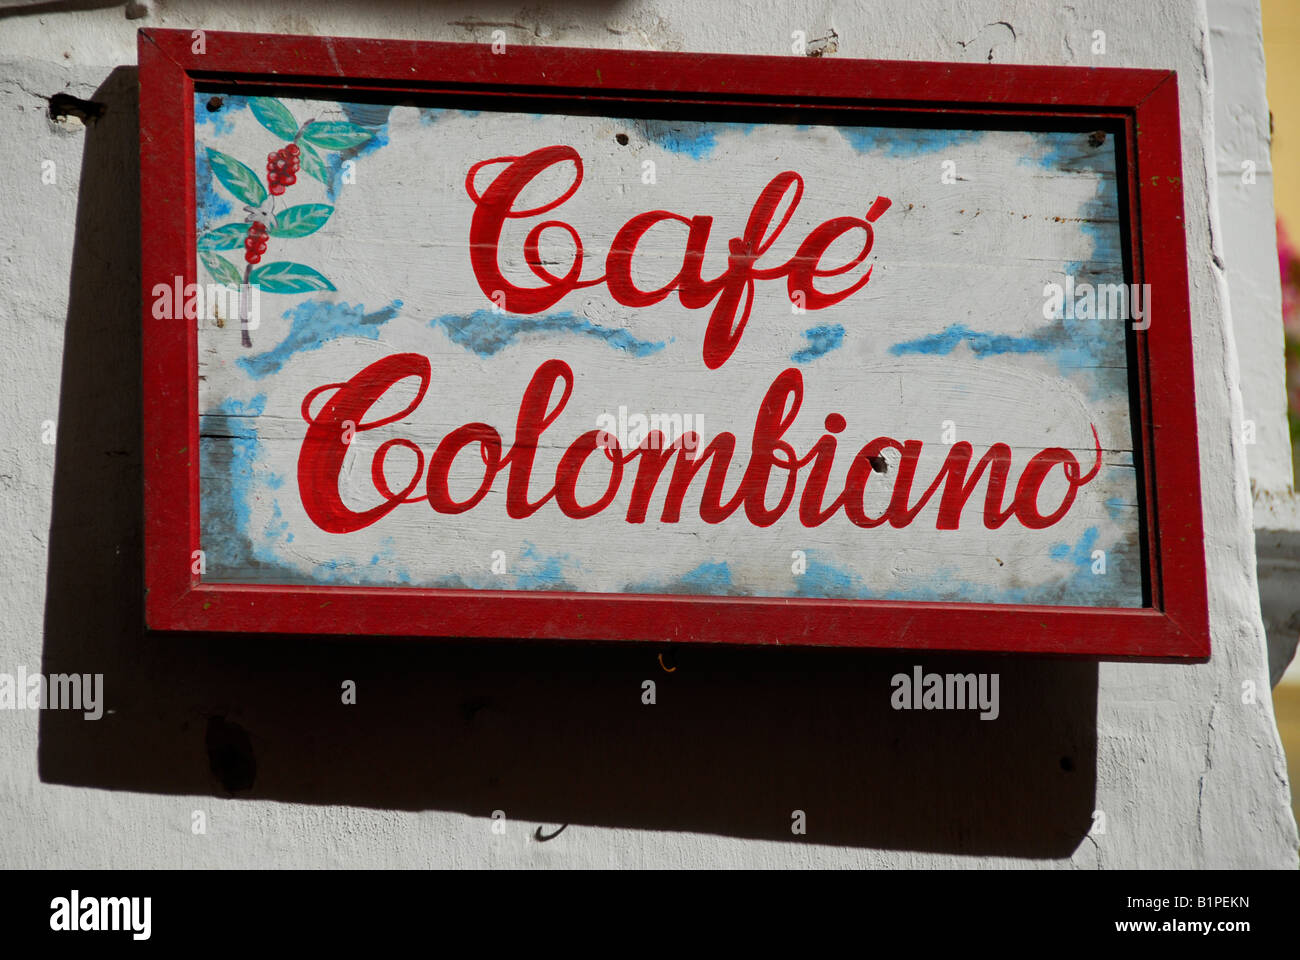 Cafe Colombiano sign on Plaza de Santo Domingo Cartagena de Indias, Colombia Stock Photo